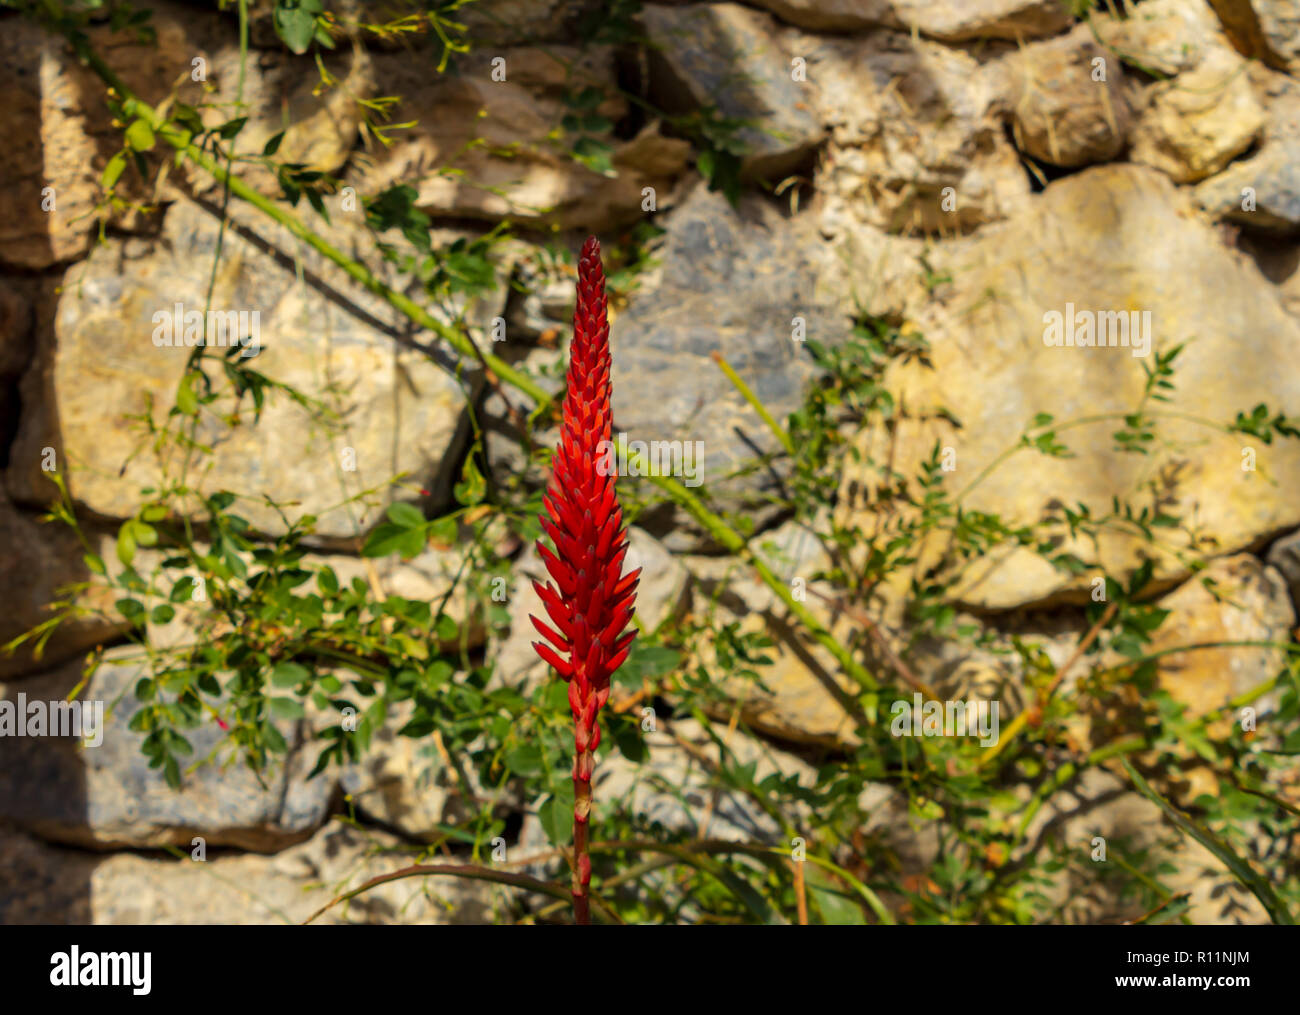 Aloe Arborescens, Candelabra Aloe Flower in Full Bloom Stock Photo